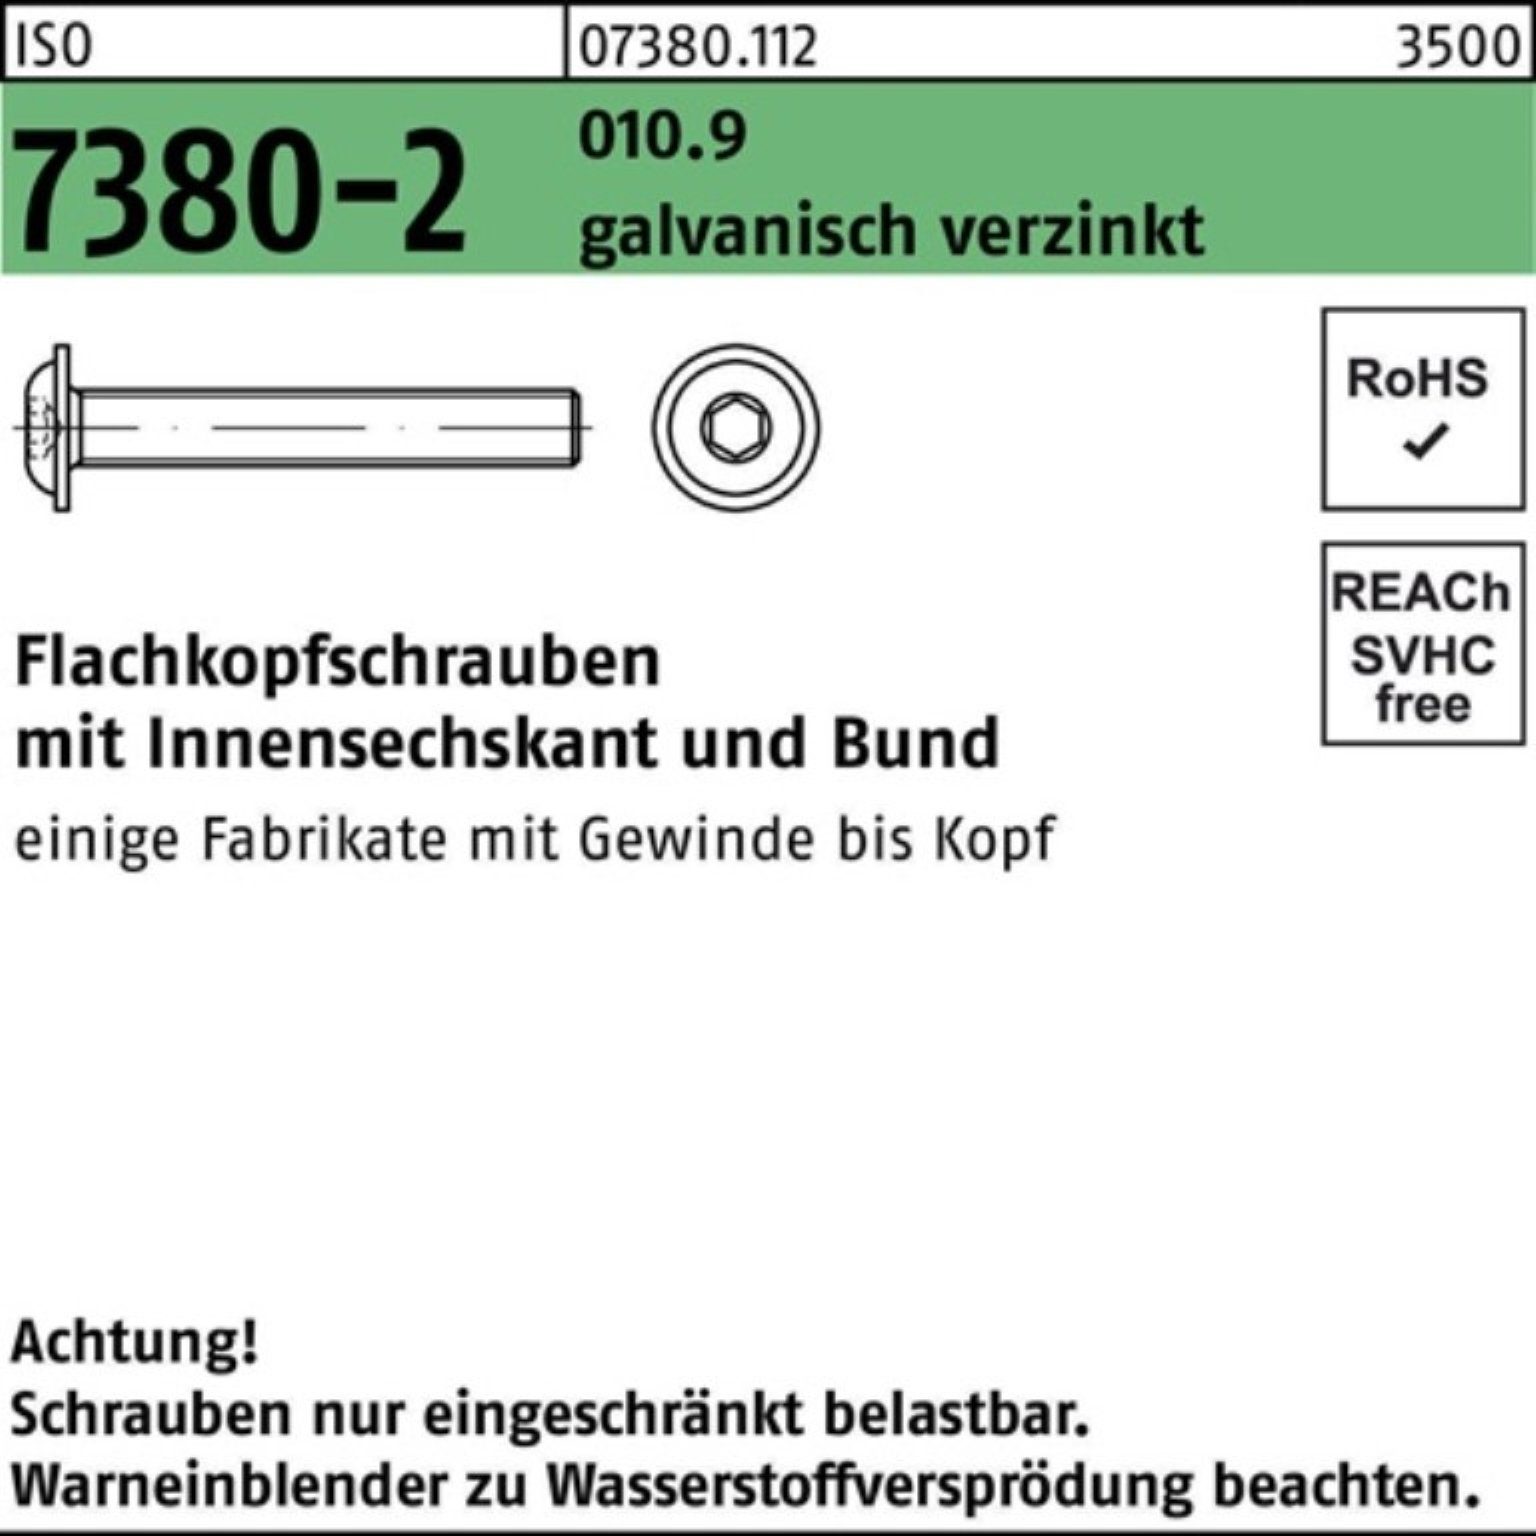 Reyher Schraube 100er Pack Flachkopfschraube M10x50 010.9 7380-2 ga Bund/Innen-6kt ISO